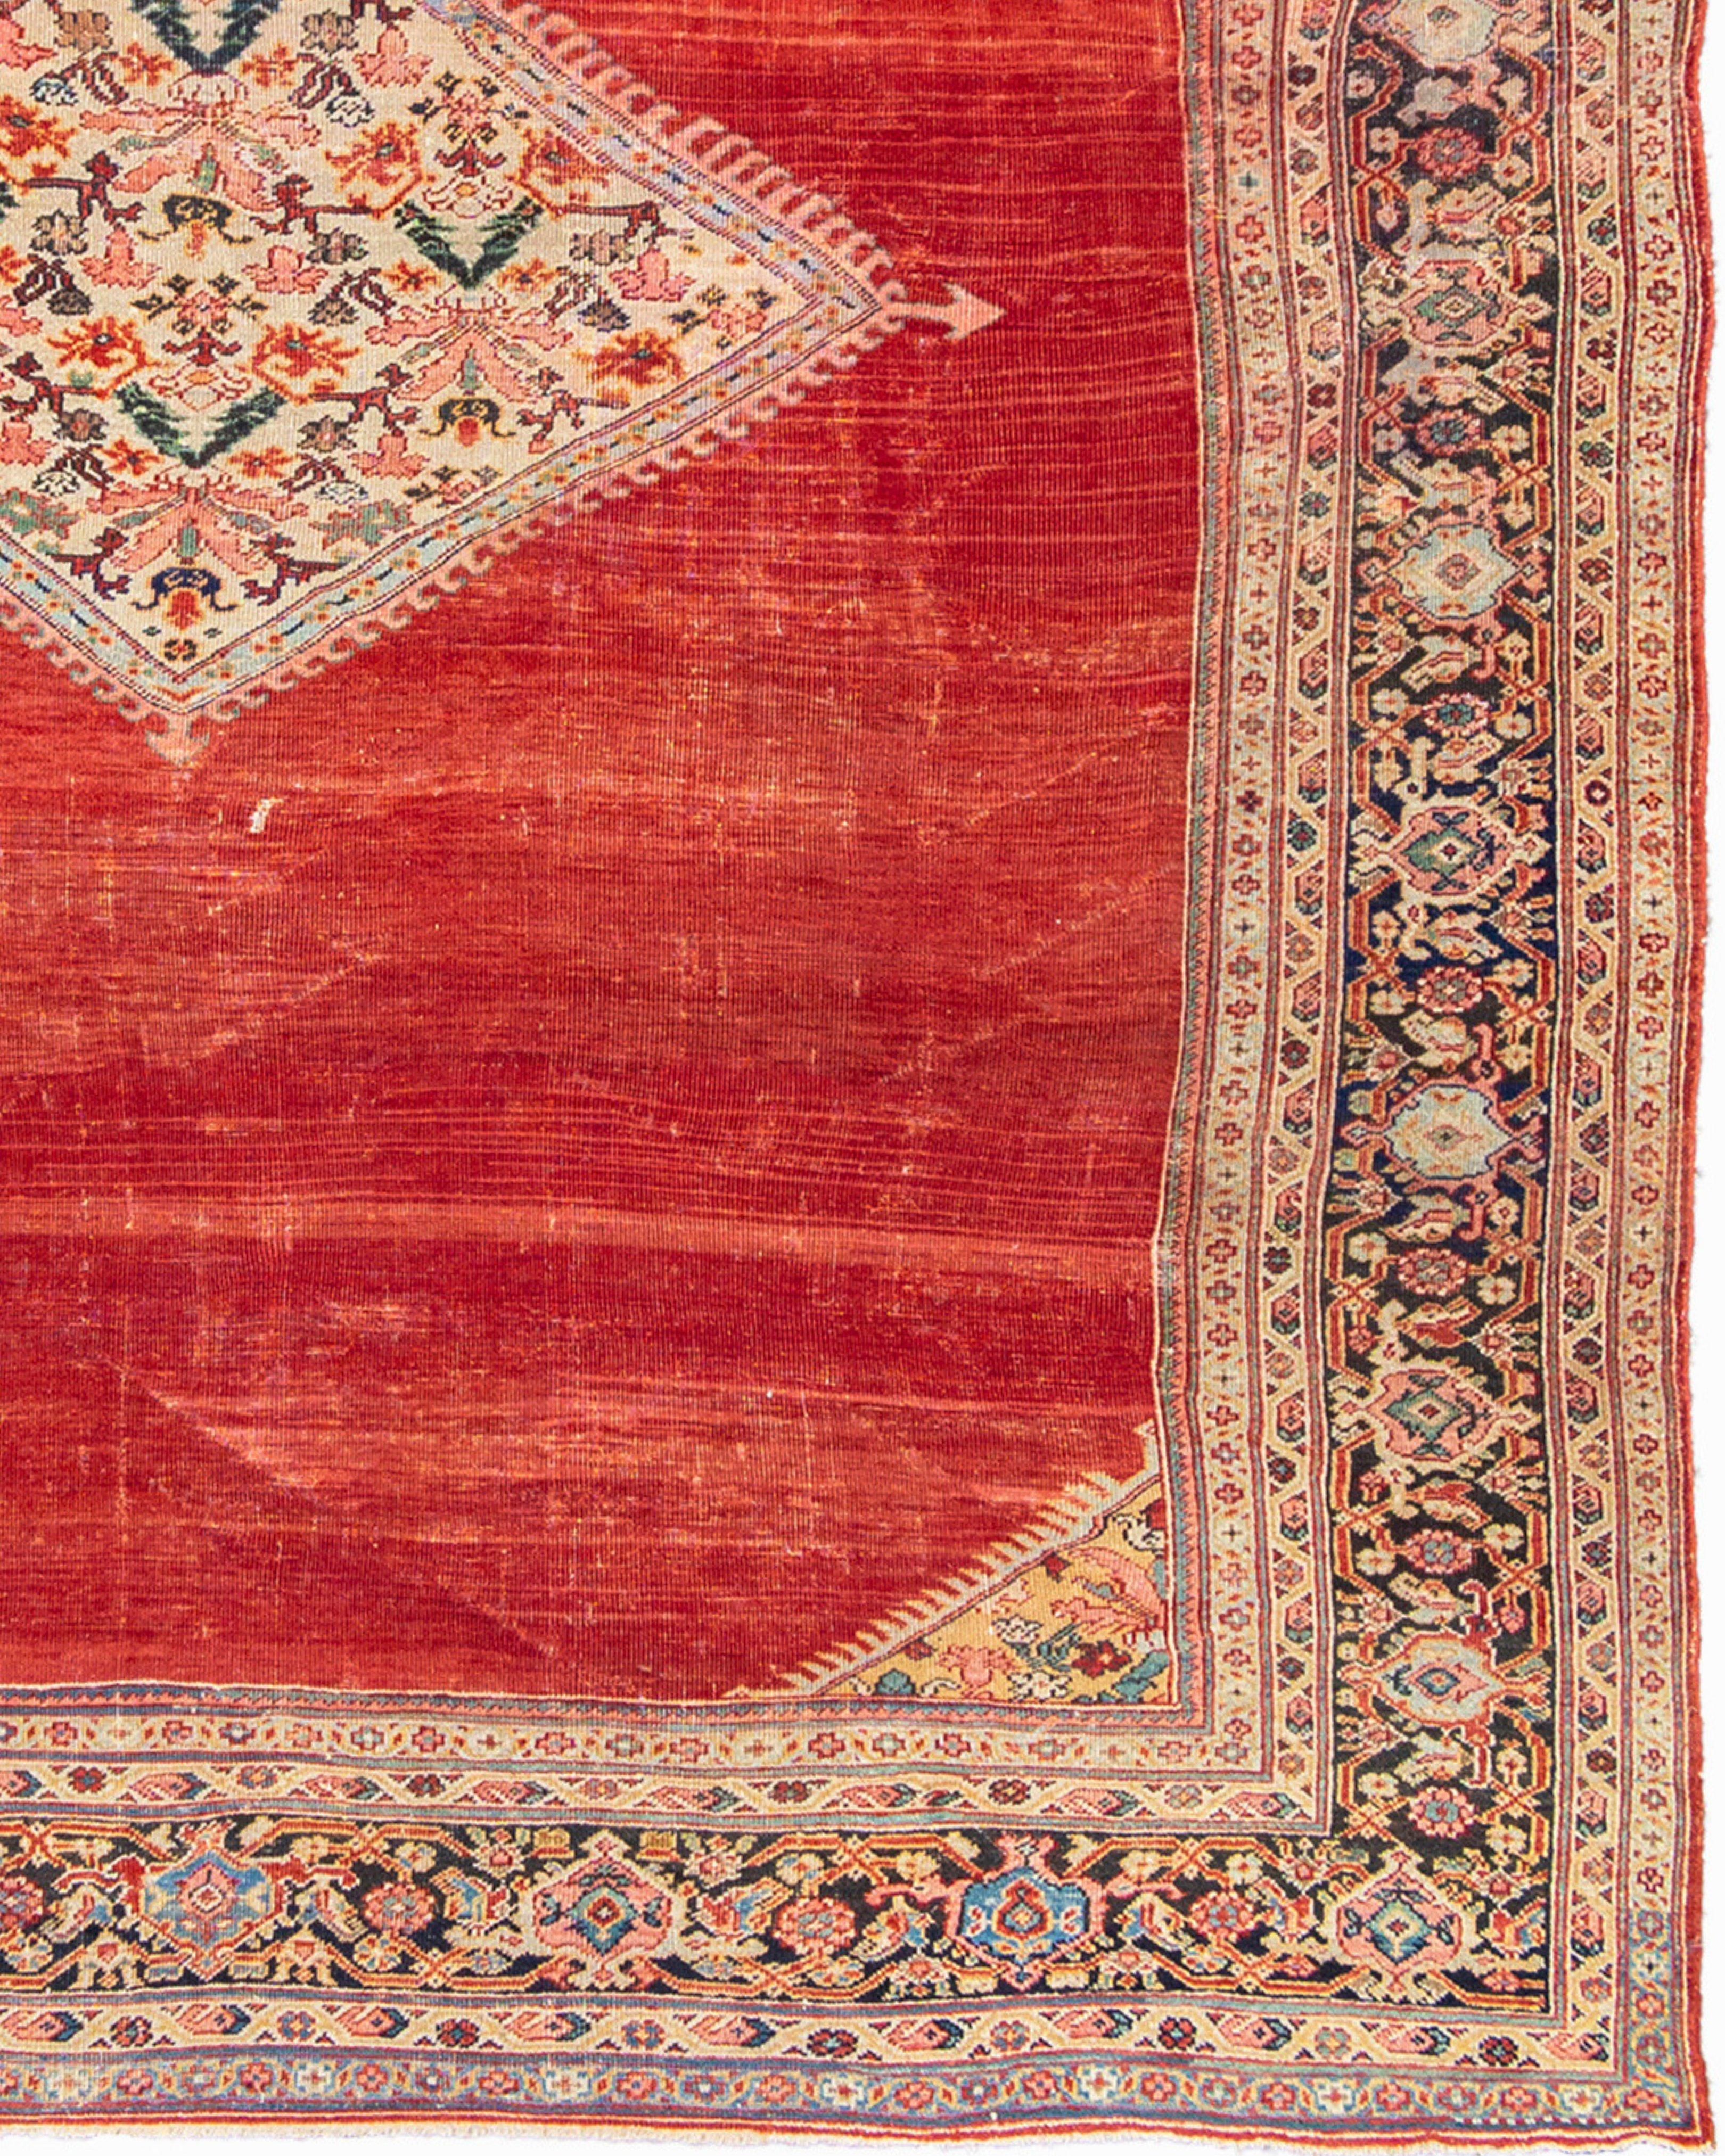 19th Century Antique Persian Mahal Carpet, c. 1900 For Sale